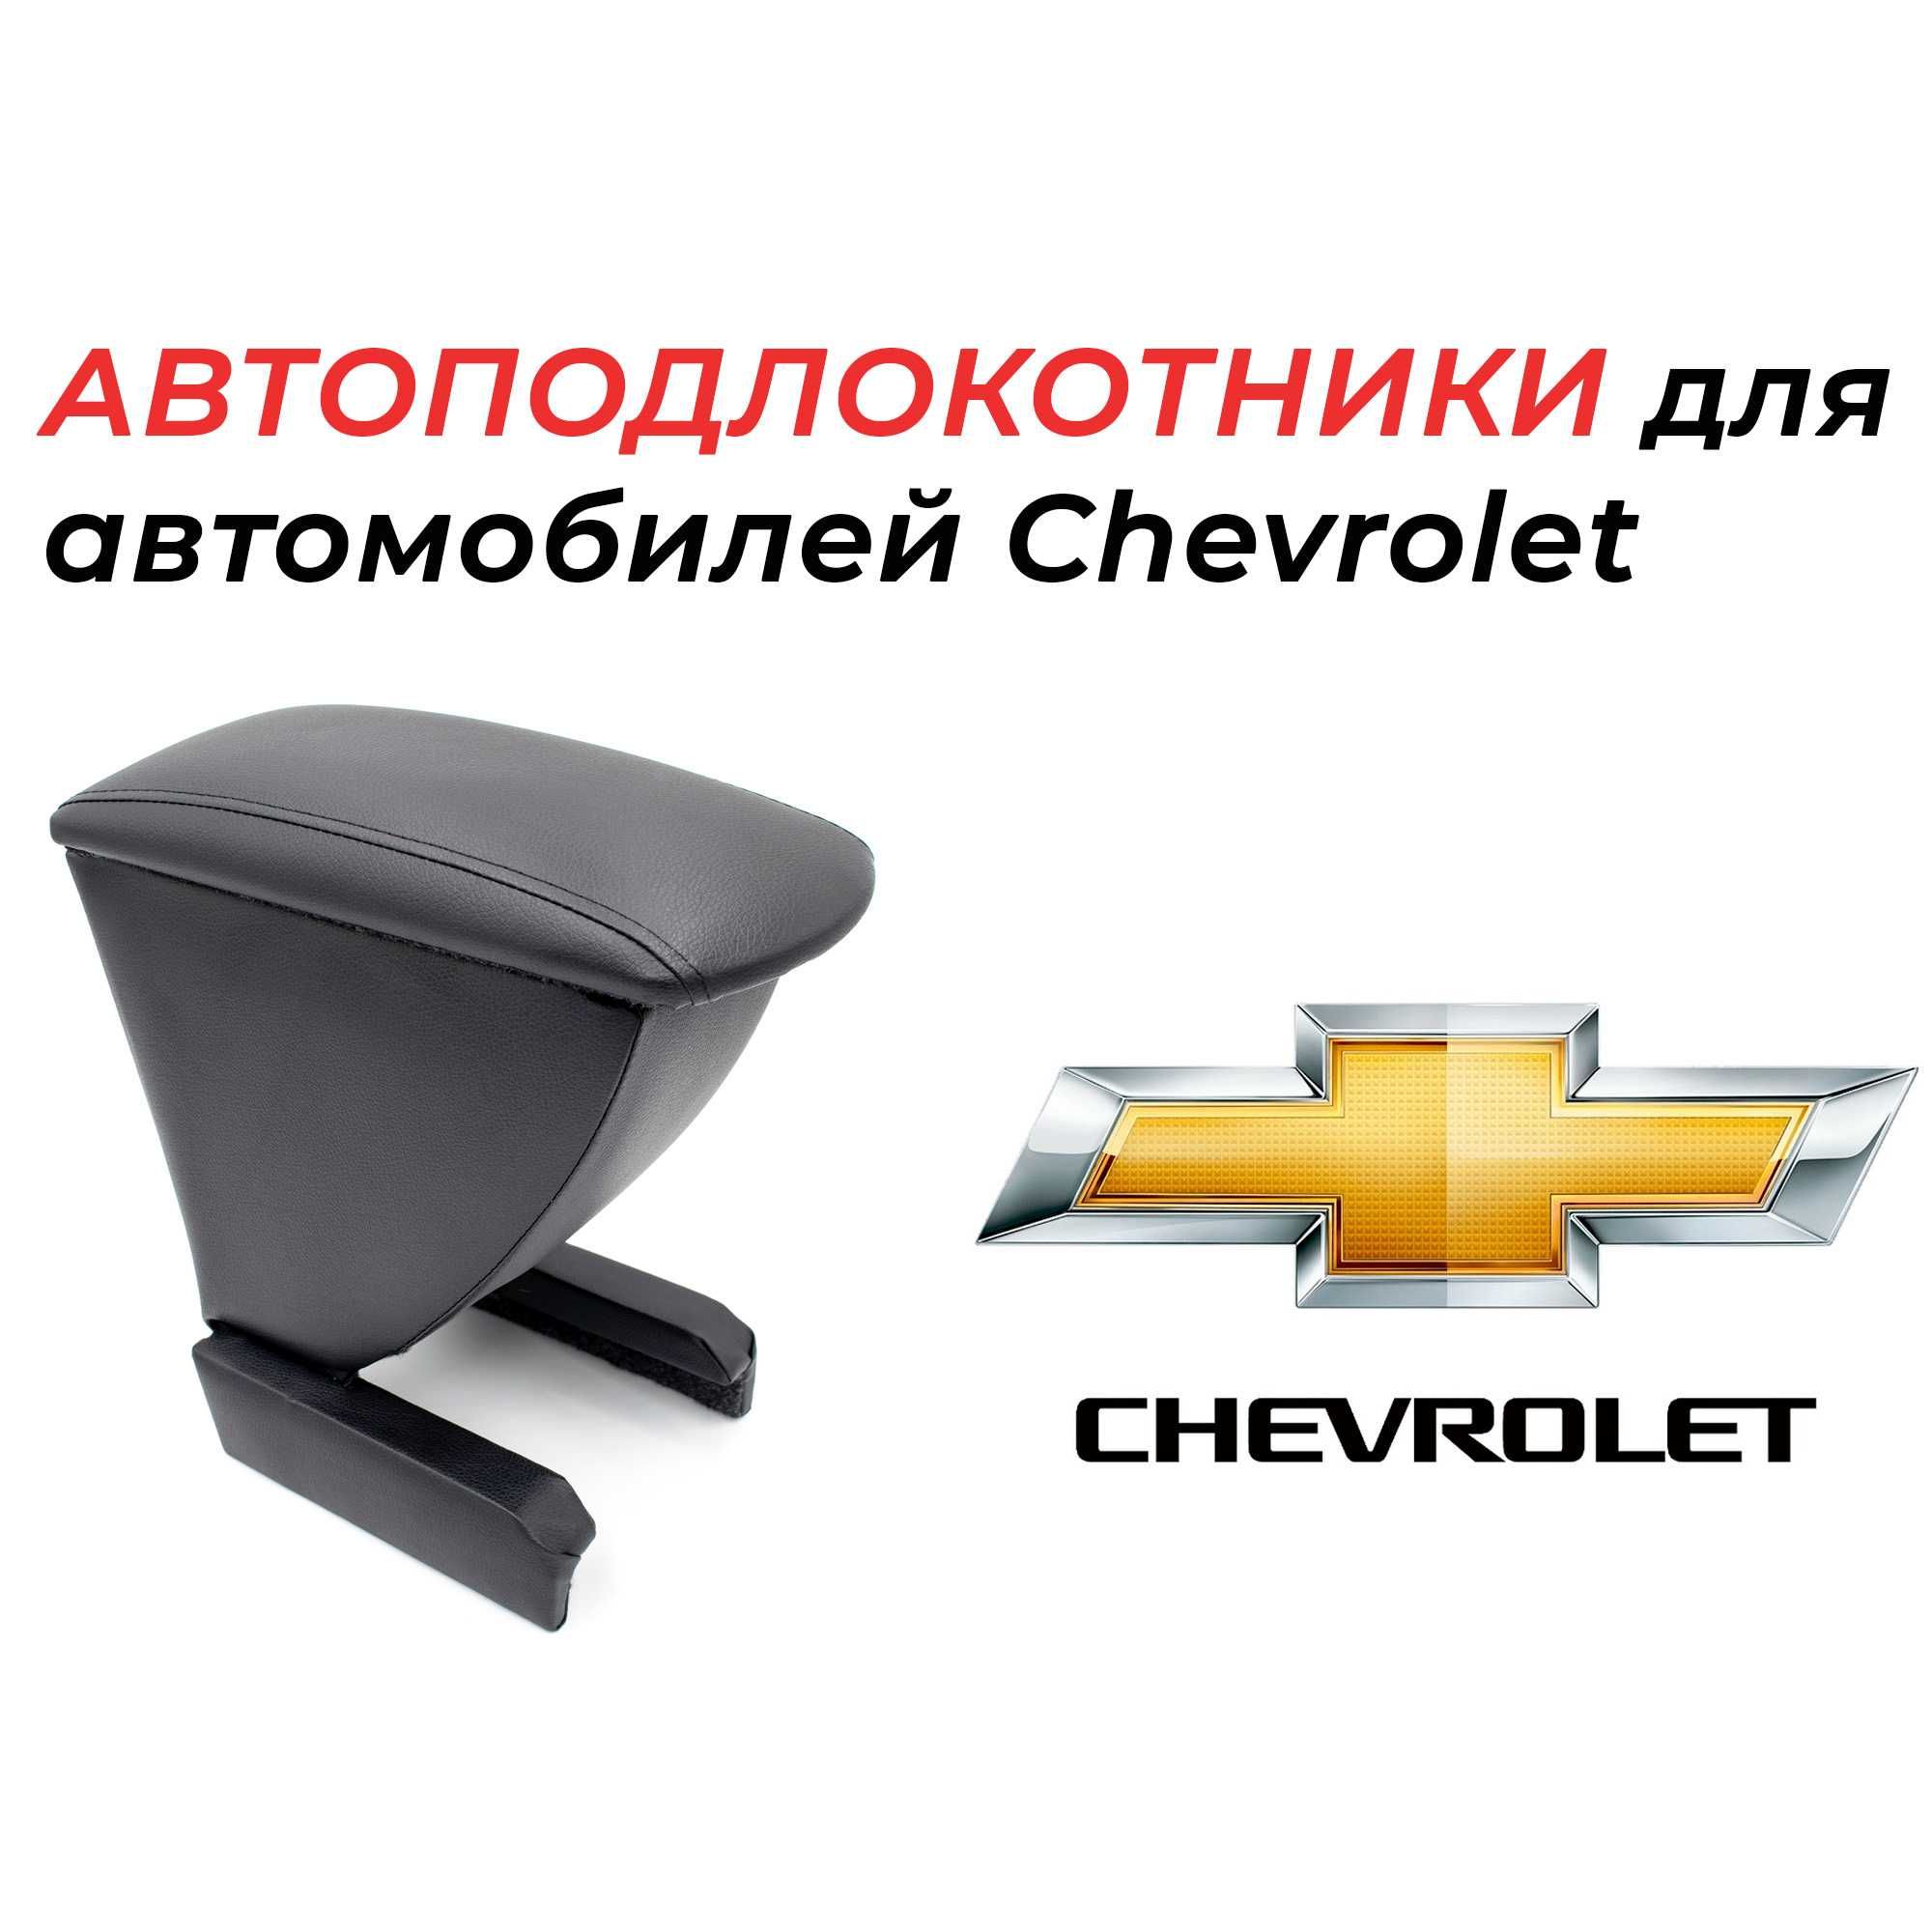 Подлокотники для автомобилей Chevrolet производства России